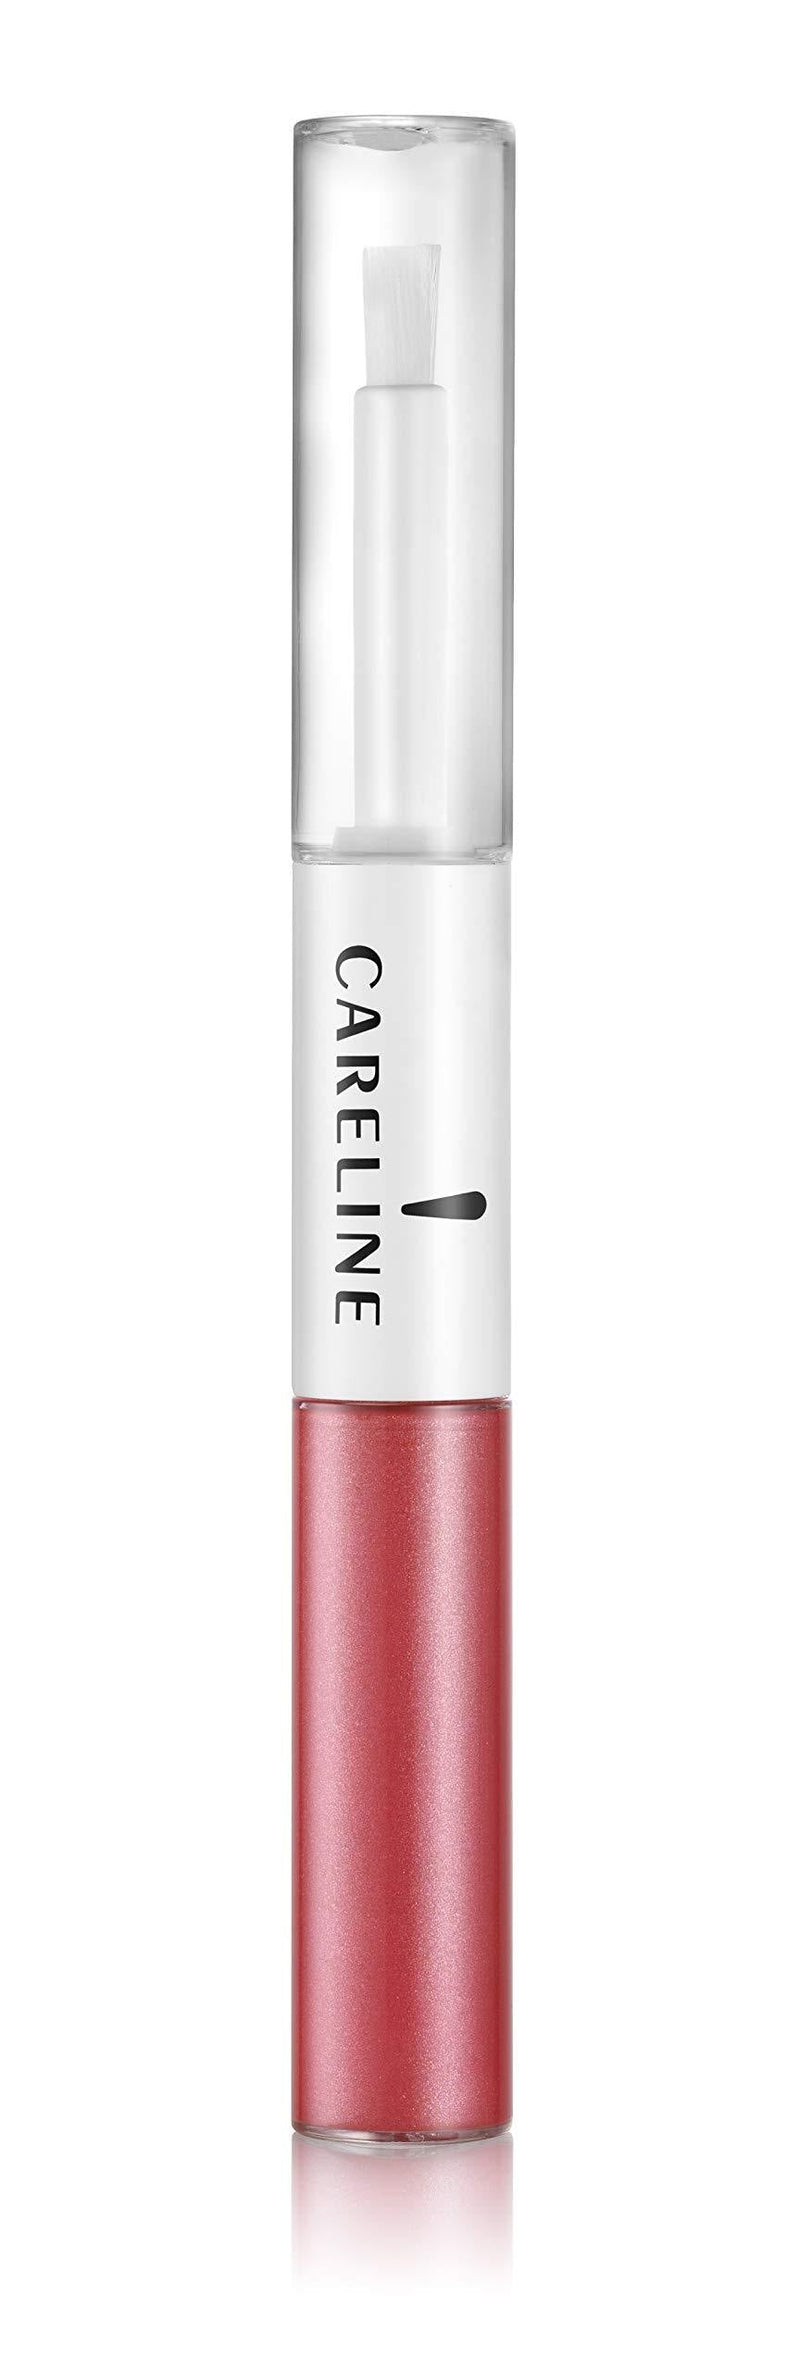 [Australia] - Careline Lip Color Everlast #718 Pink Coral, 1 count (SG_B00V3MHV92_US) 718 